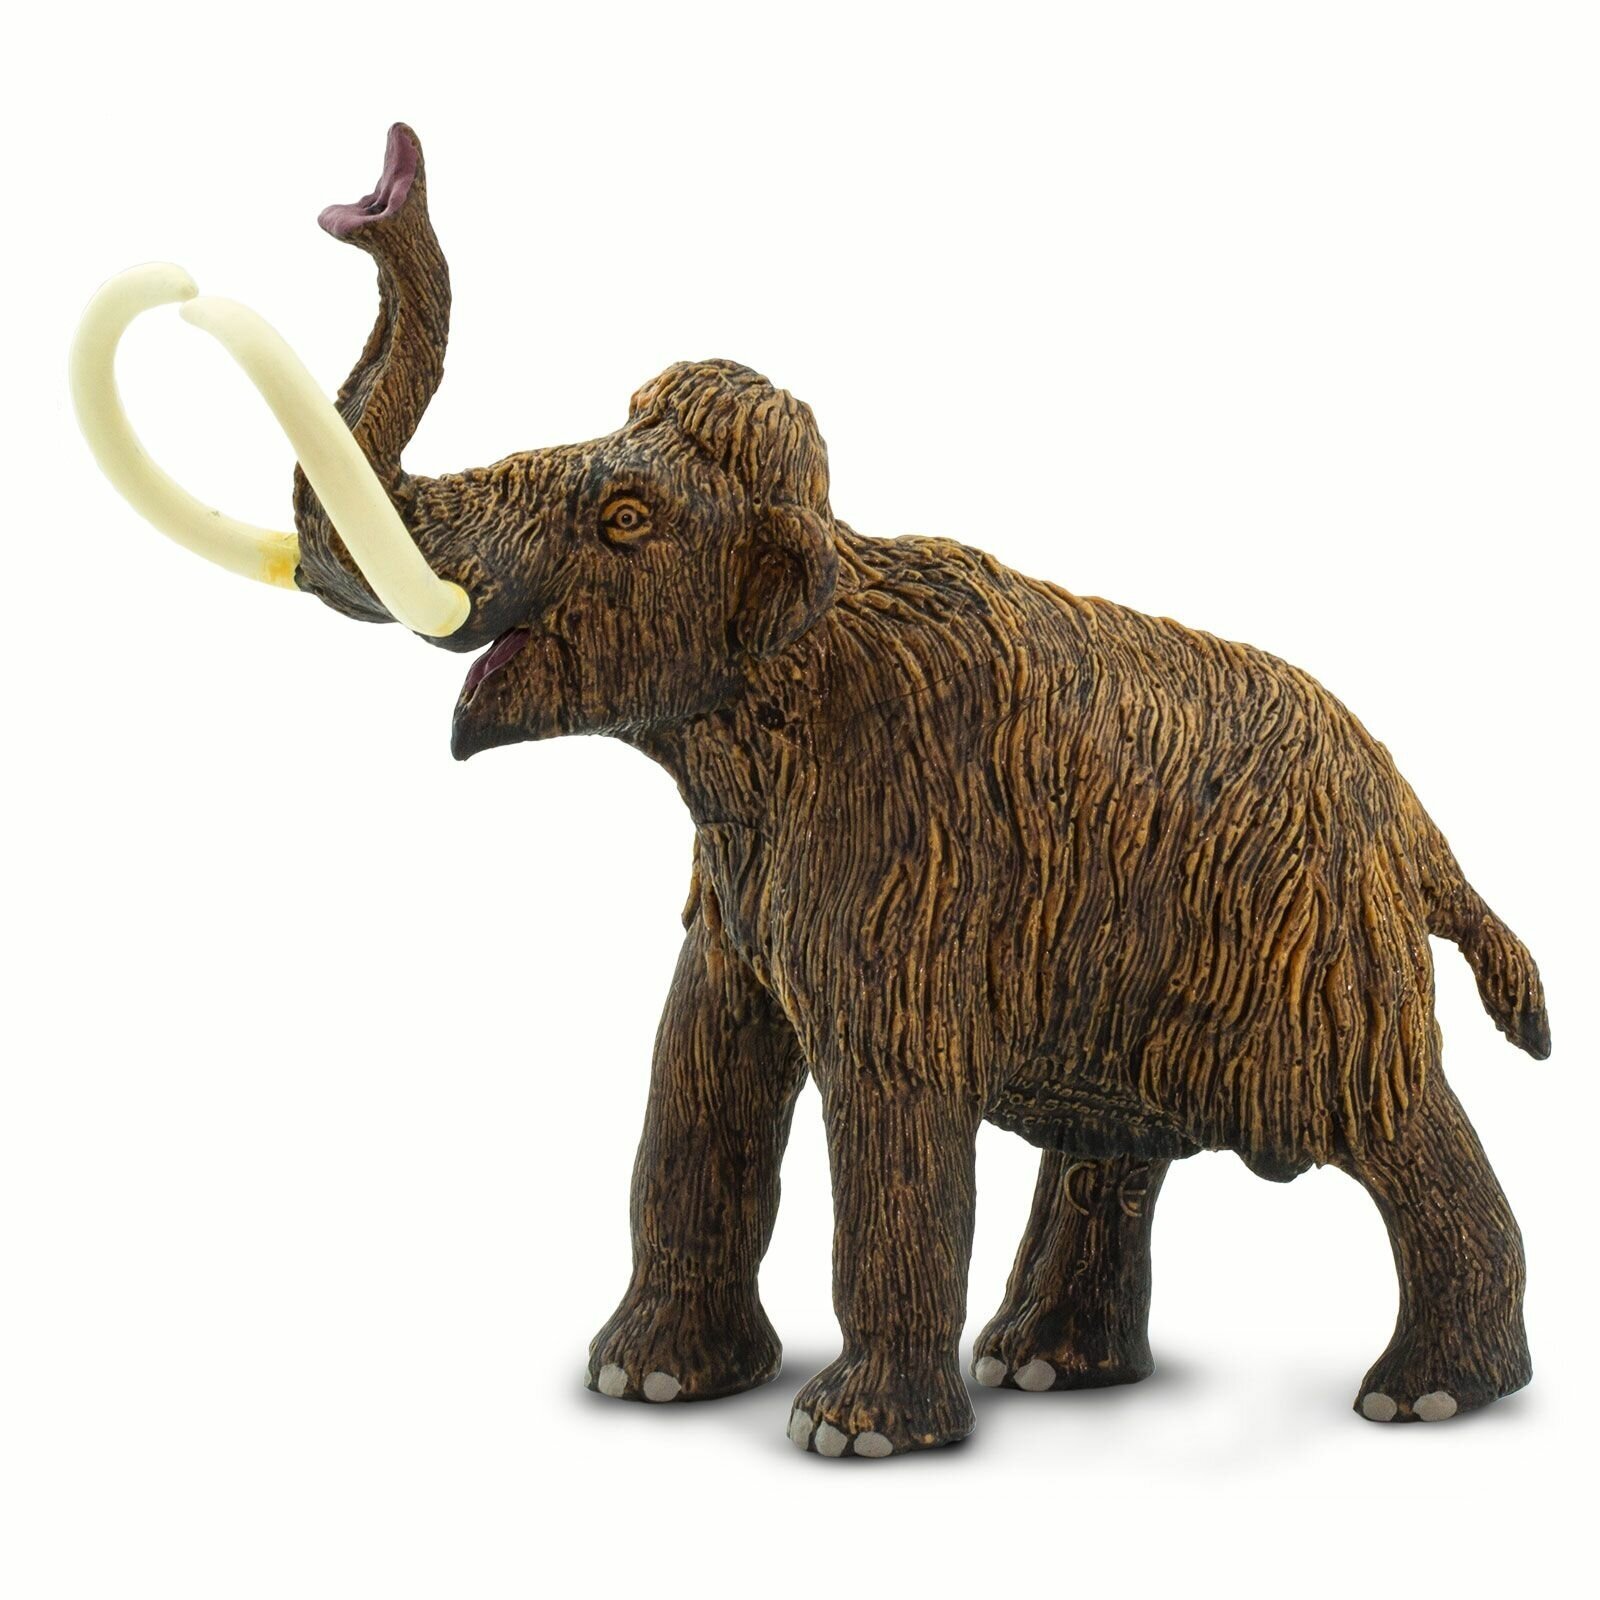 Фигурка динозавра Safari Ltd Шерстистый Мамонт, для детей, игрушка коллекционная, 279929